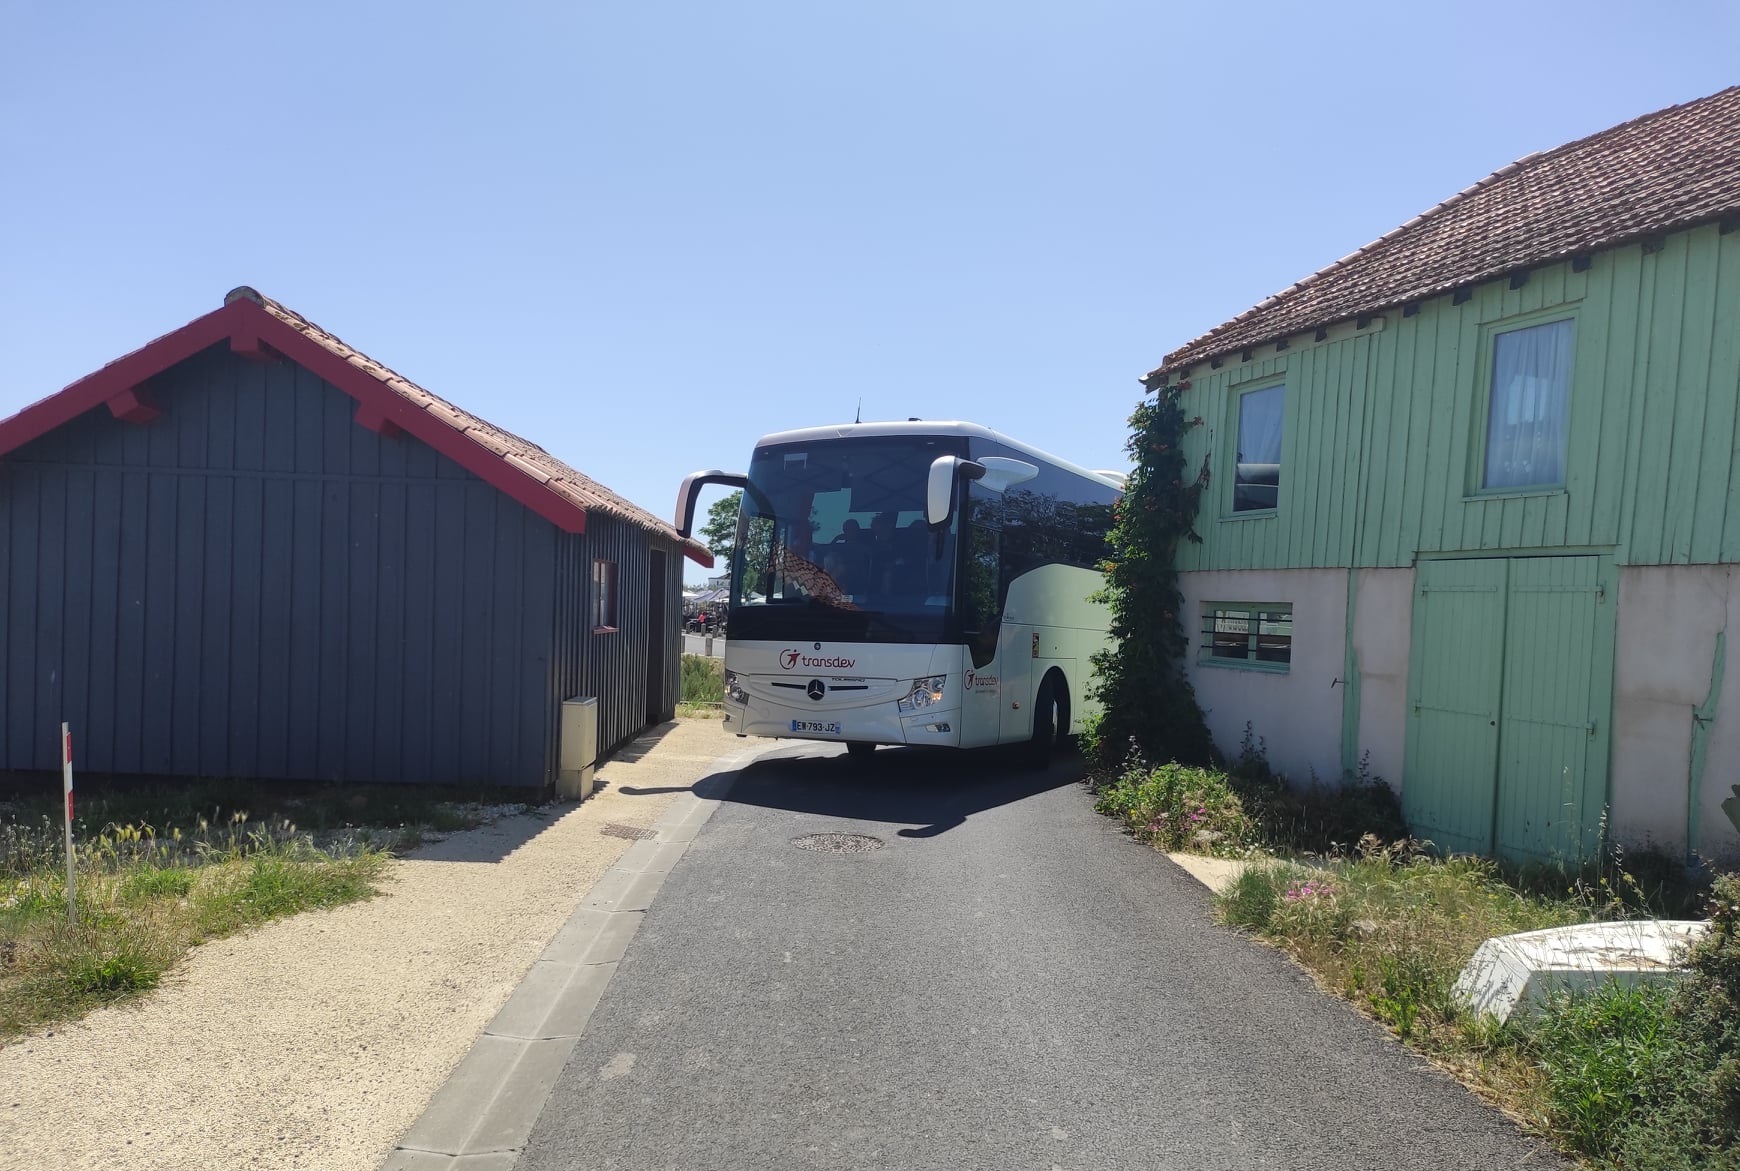 Bus Transdev